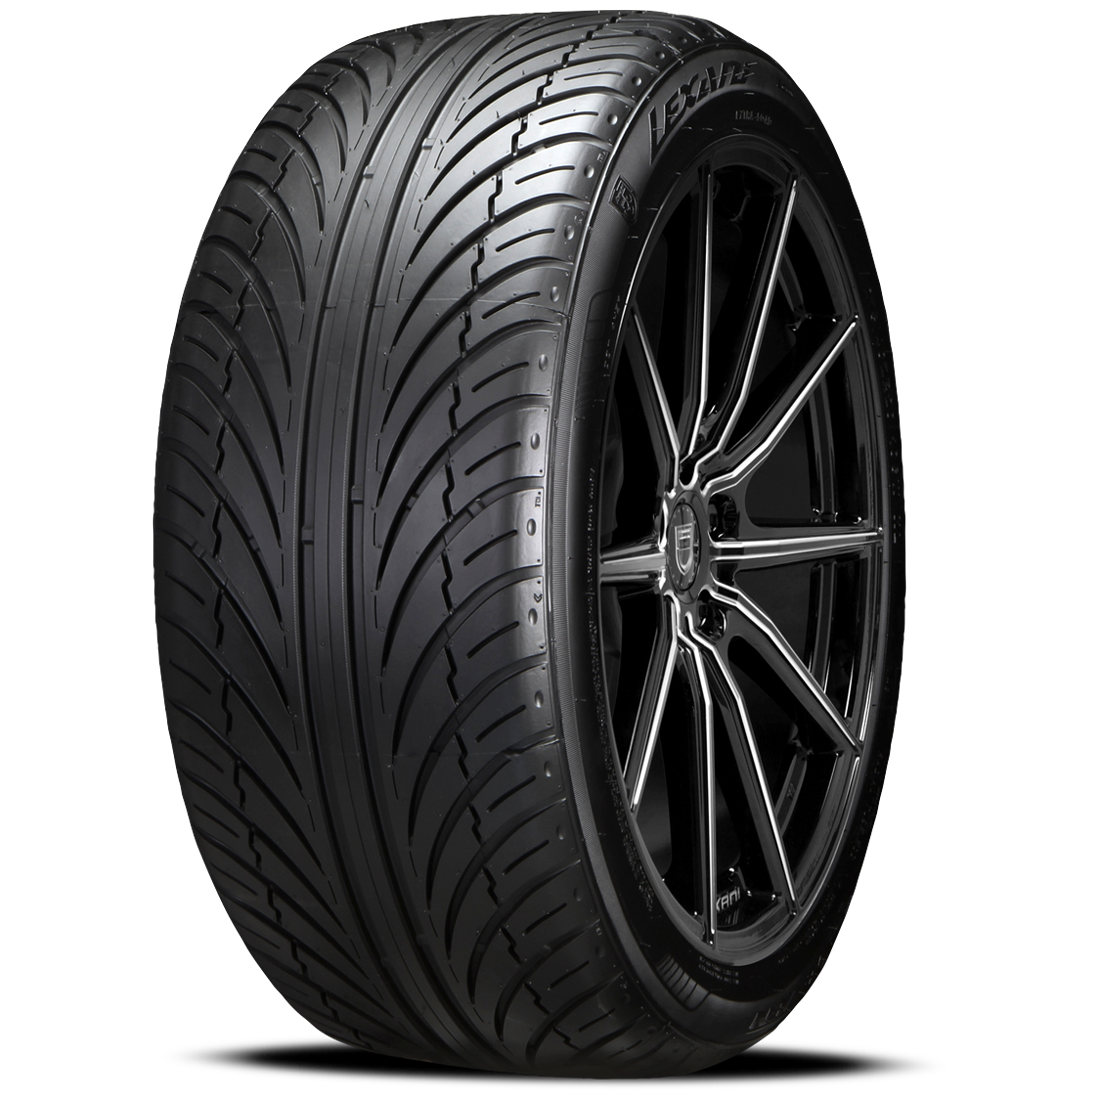 LEXANI LX-SEVEN 225/55ZR17 (26.8X9.2R 17) Tires